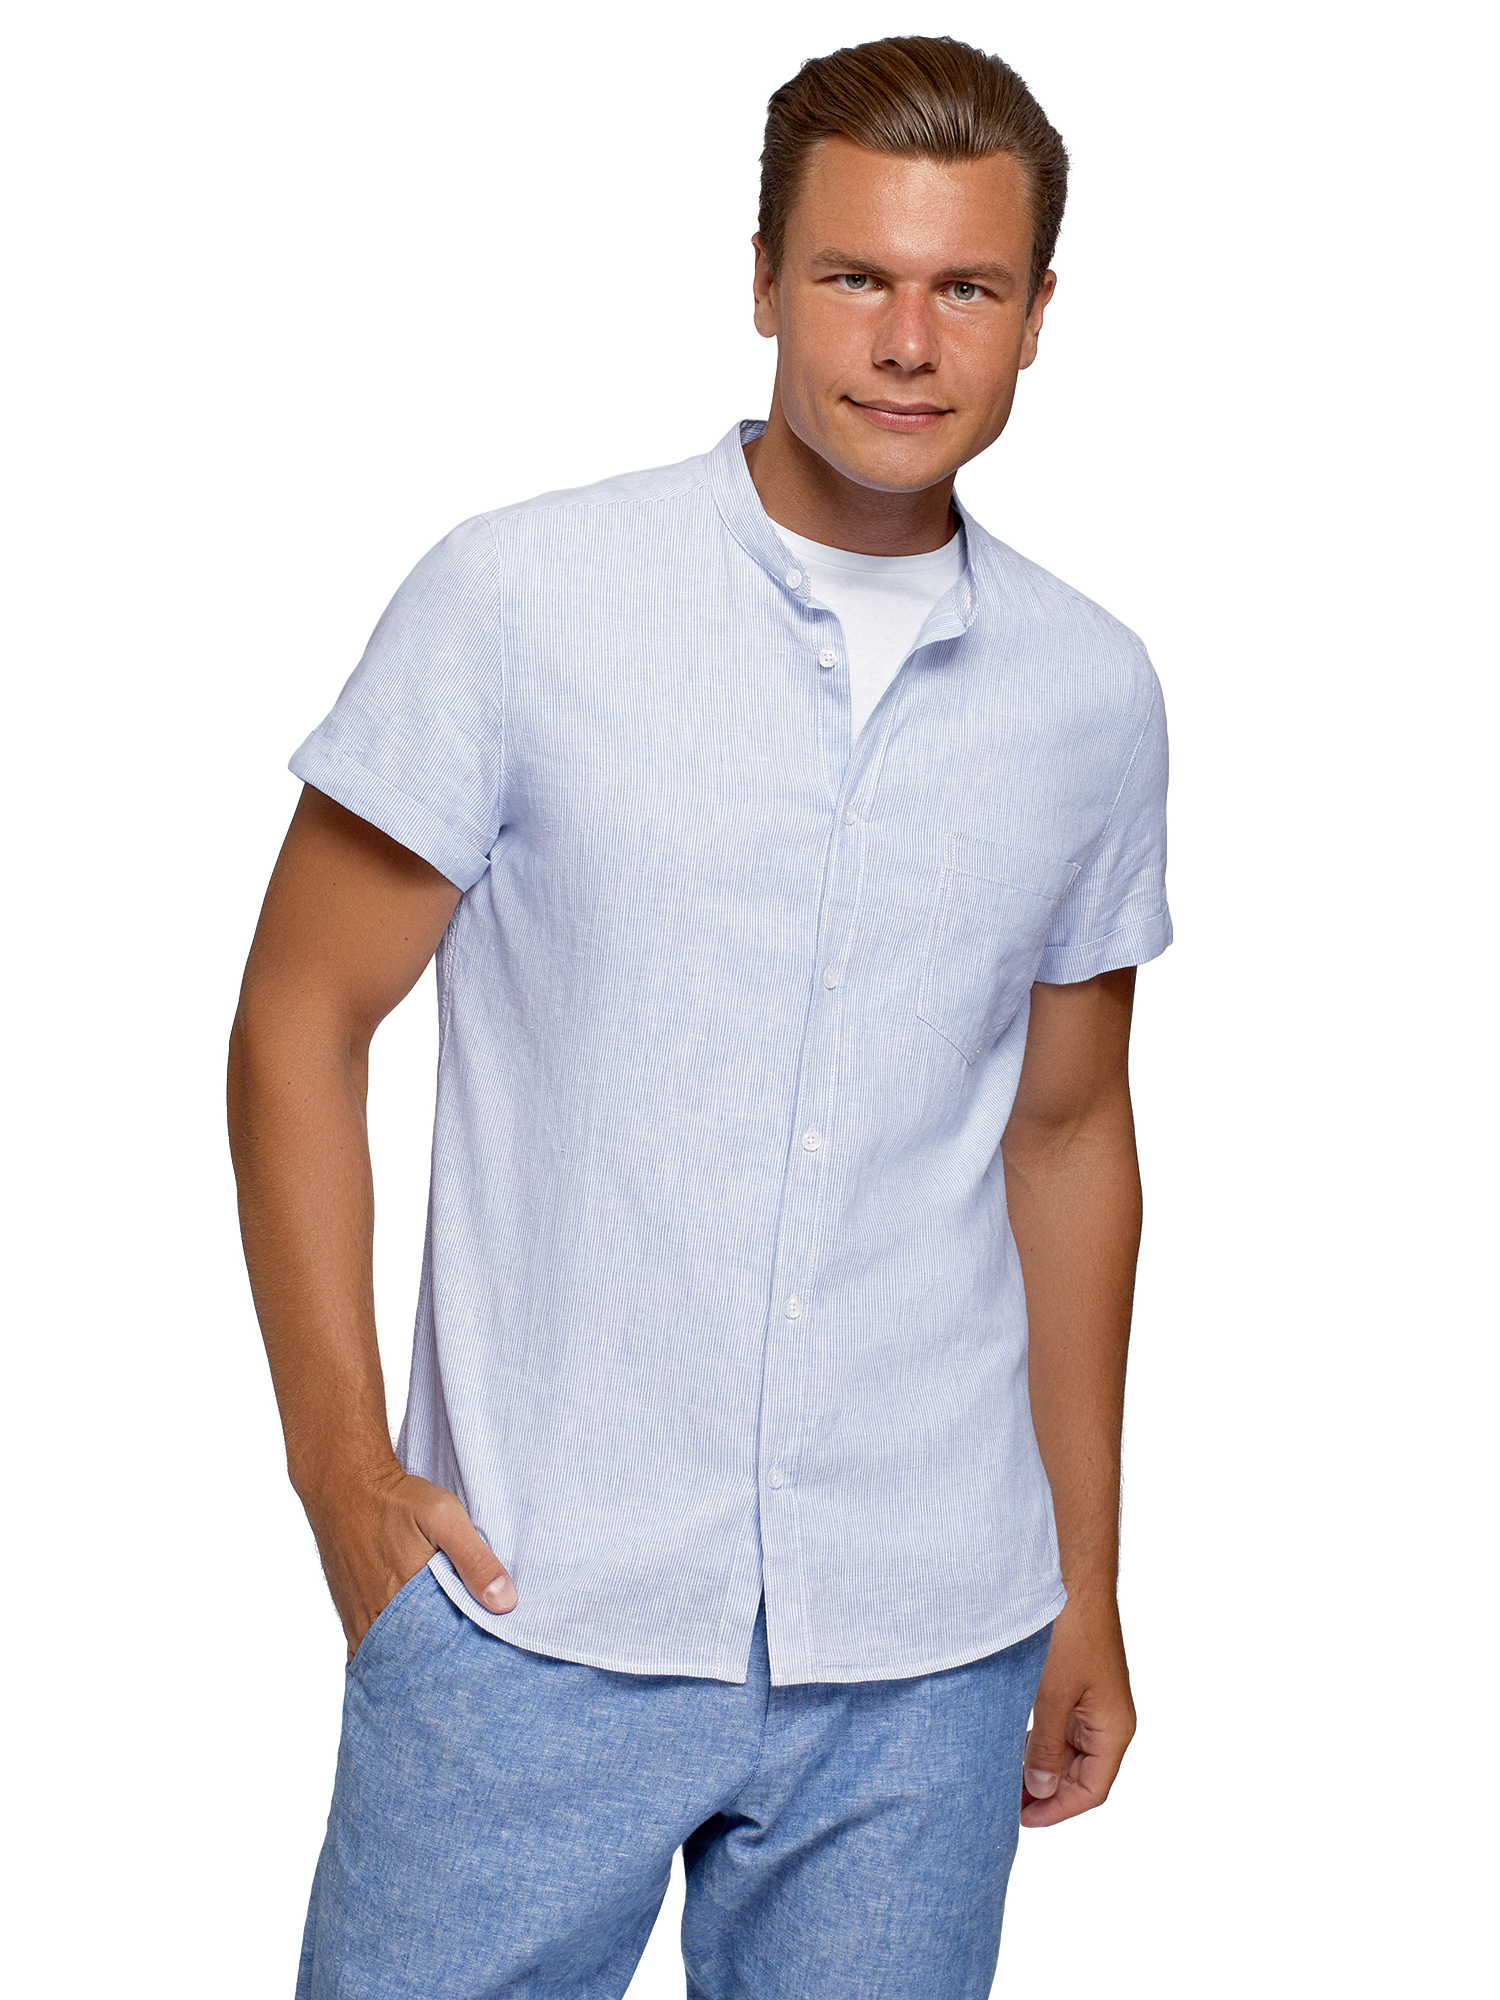 Рубашка мужская oodji 3L420005M-1 белая XL